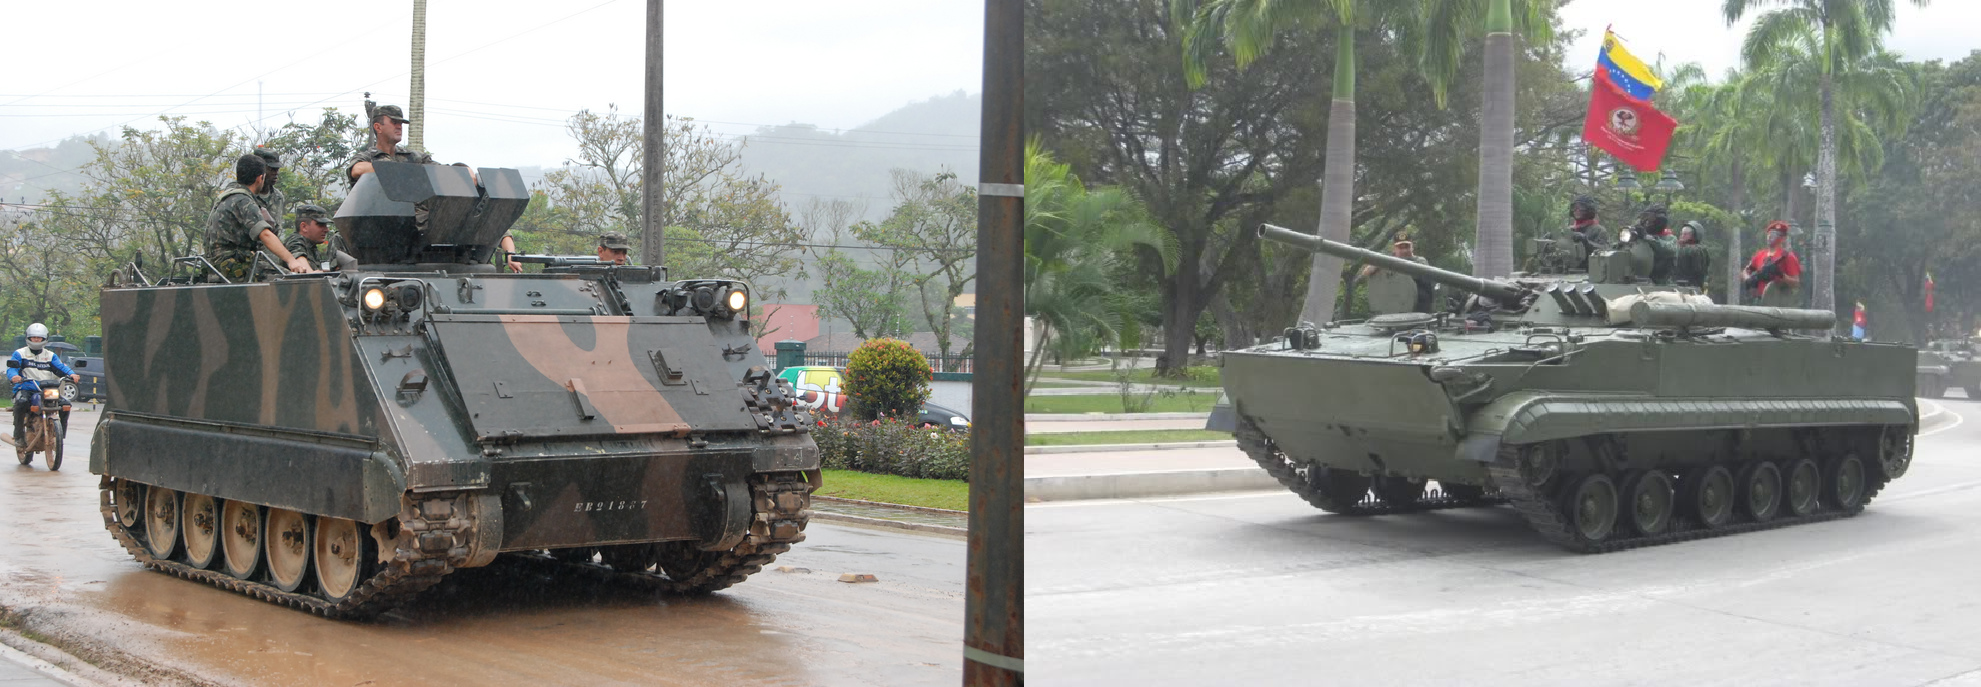 Comparações Brasil / Venezuela, Uma Revisão dos Últimos Cinco Anos: M-113 vs BMP-3